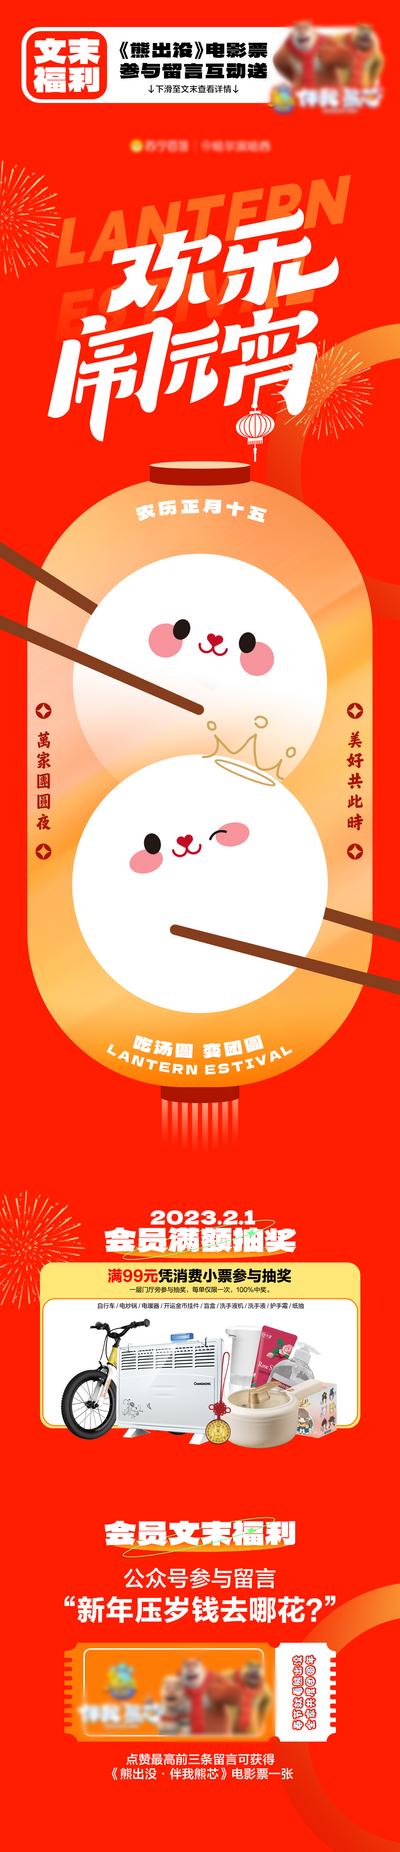 南门网 海报 长图 元宵节 中国传统节日 汤圆 插画 商业